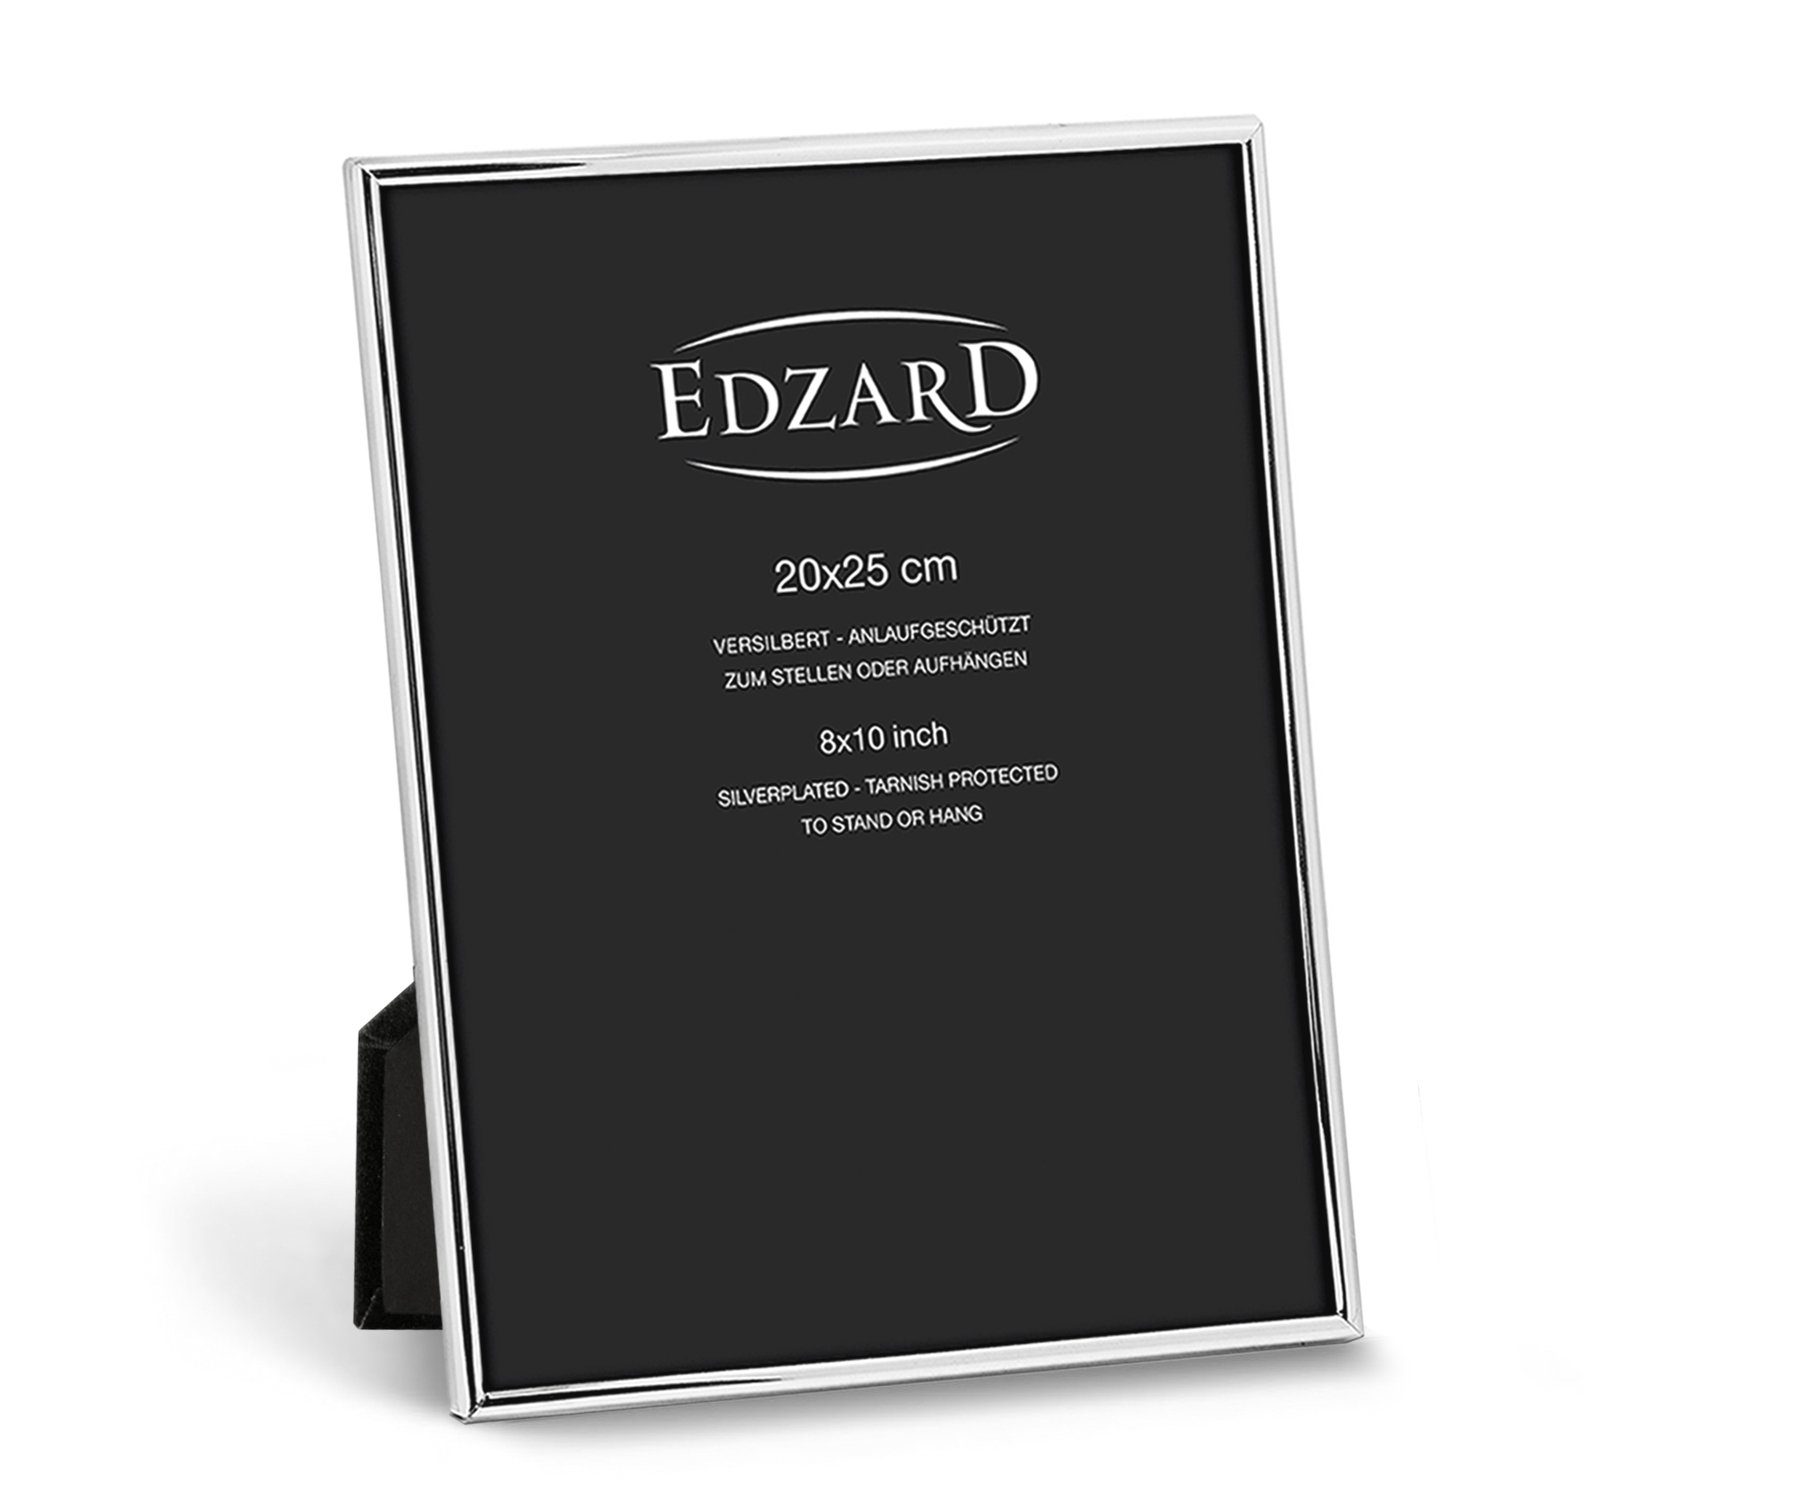 EDZARD Bilderrahmen Genua, für 20x25 cm Foto - edel versilbert und anlaufgeschützt